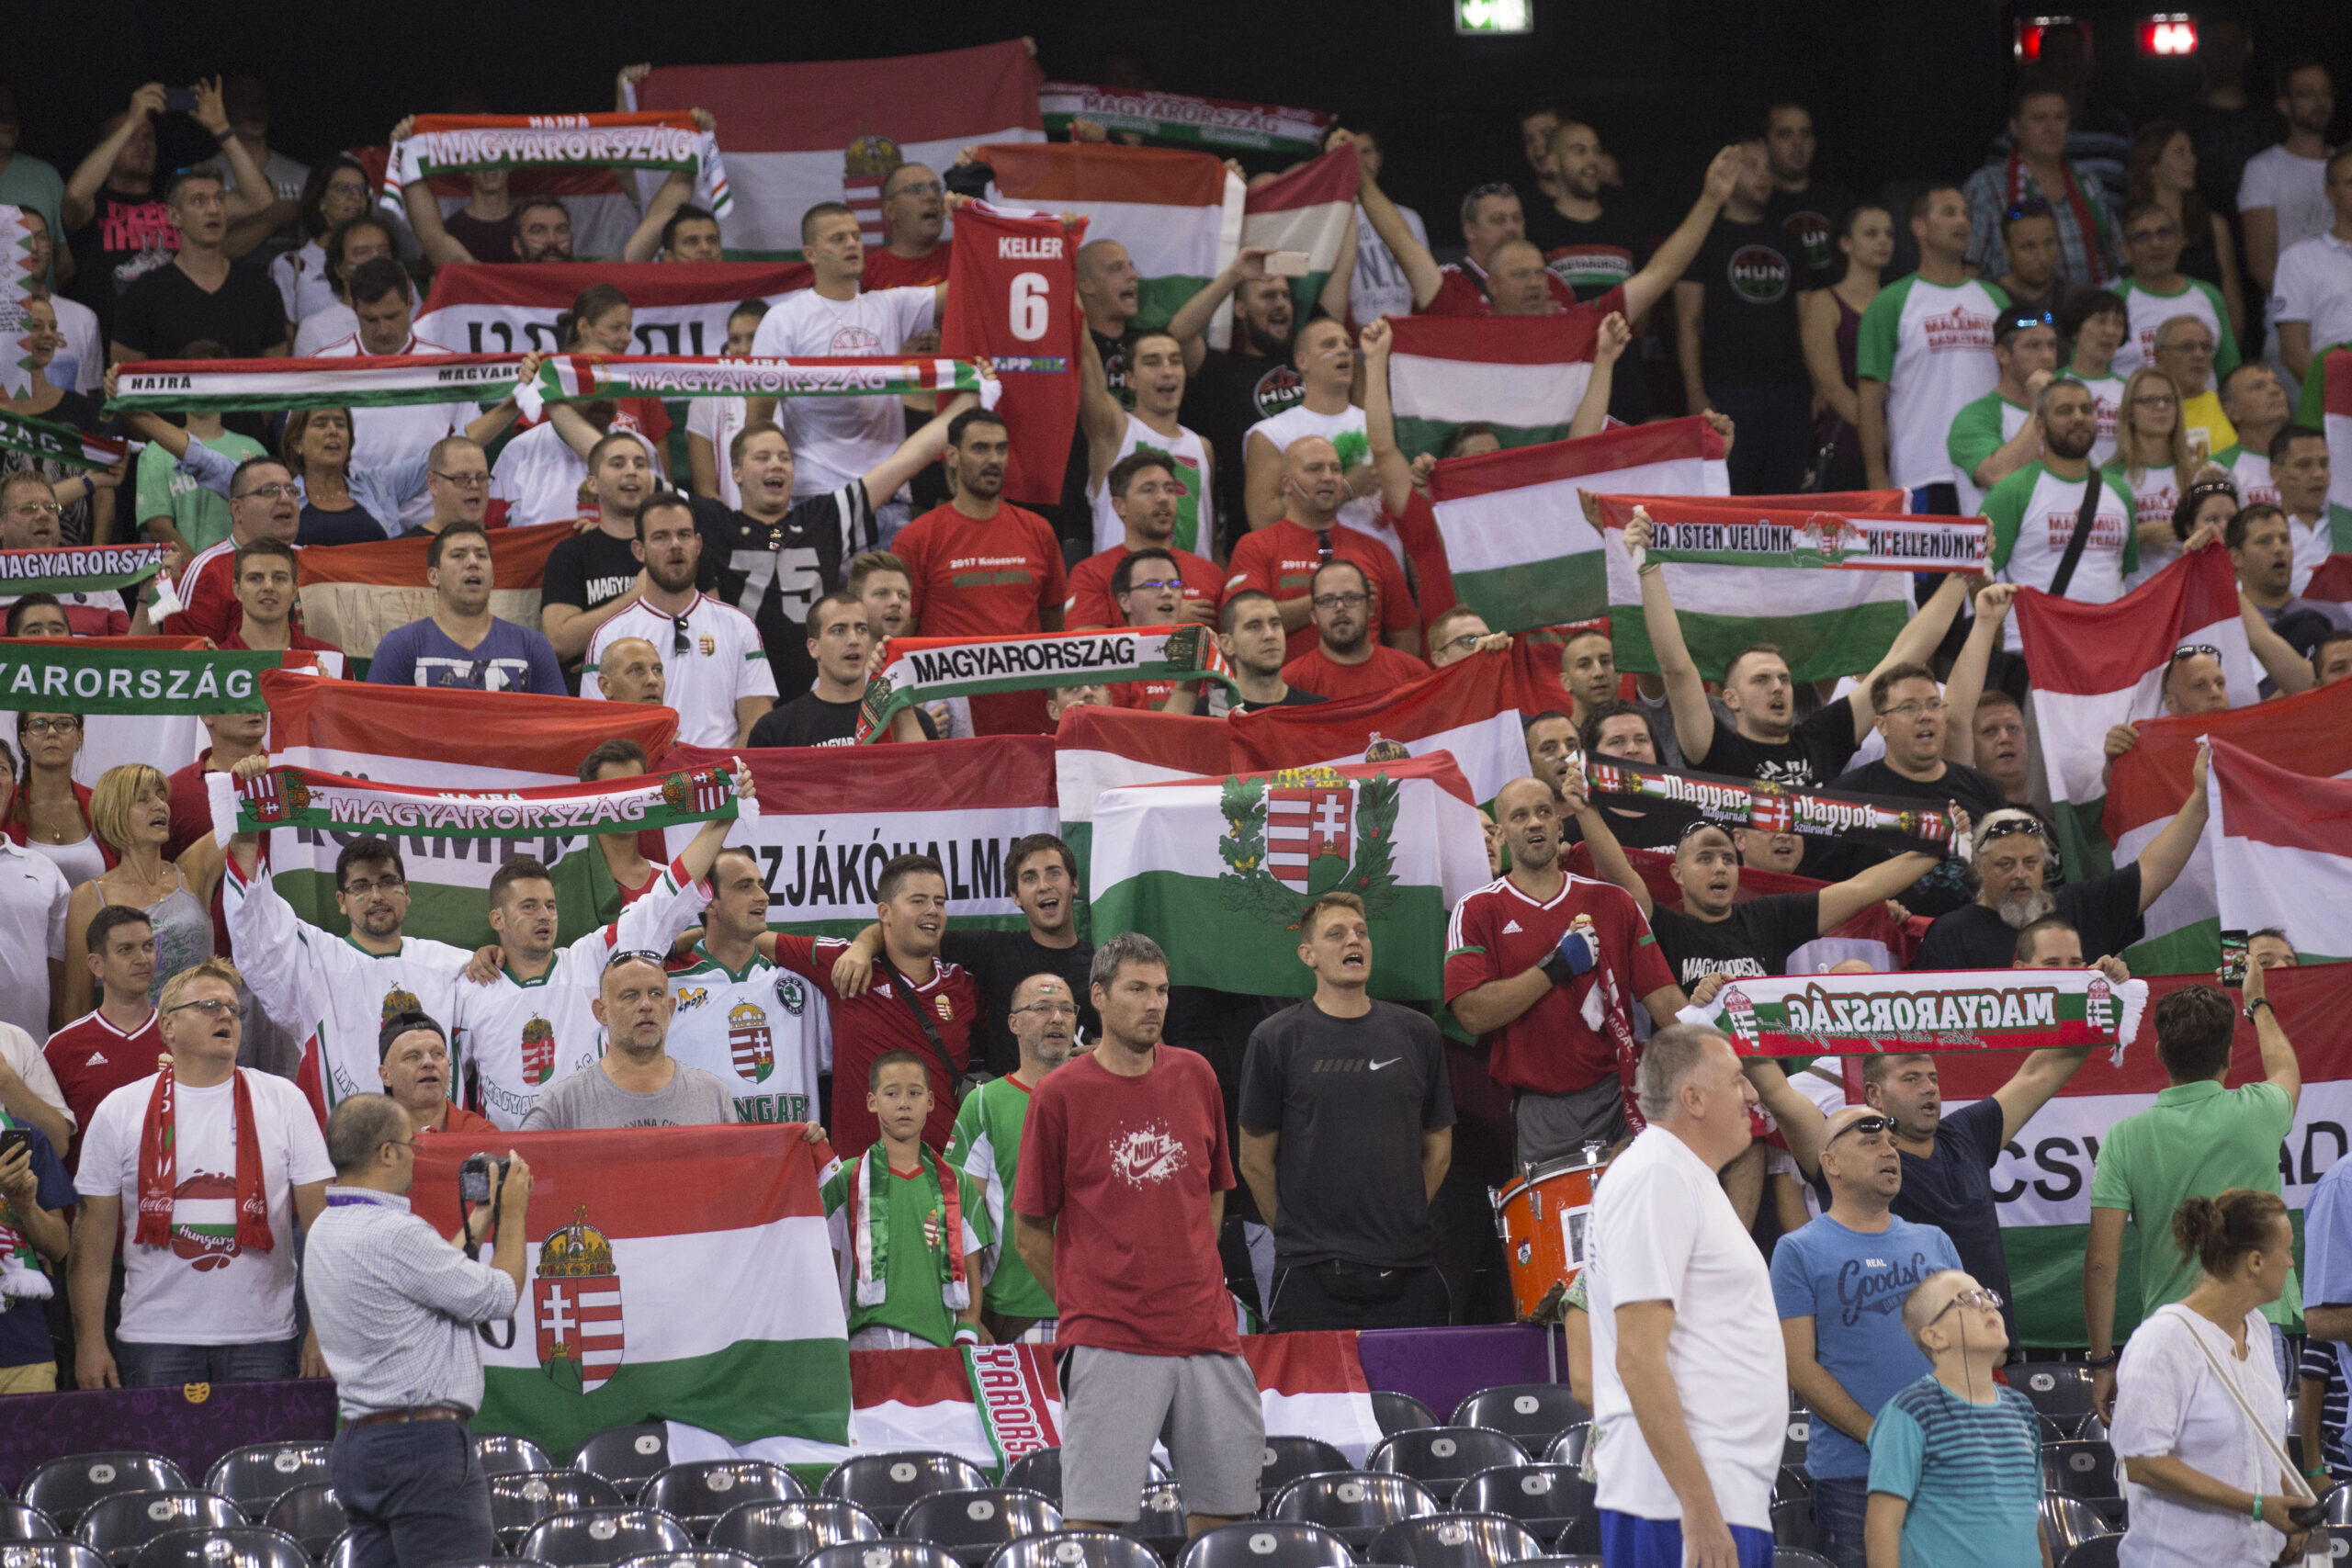 Maghiarii vor să arboreze pe stadioane steagul Ungariei Mari